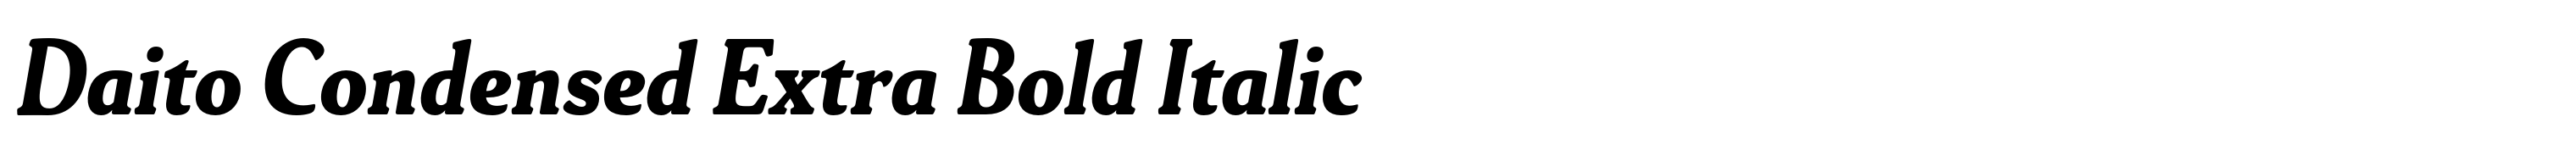 Daito Condensed Extra Bold Italic